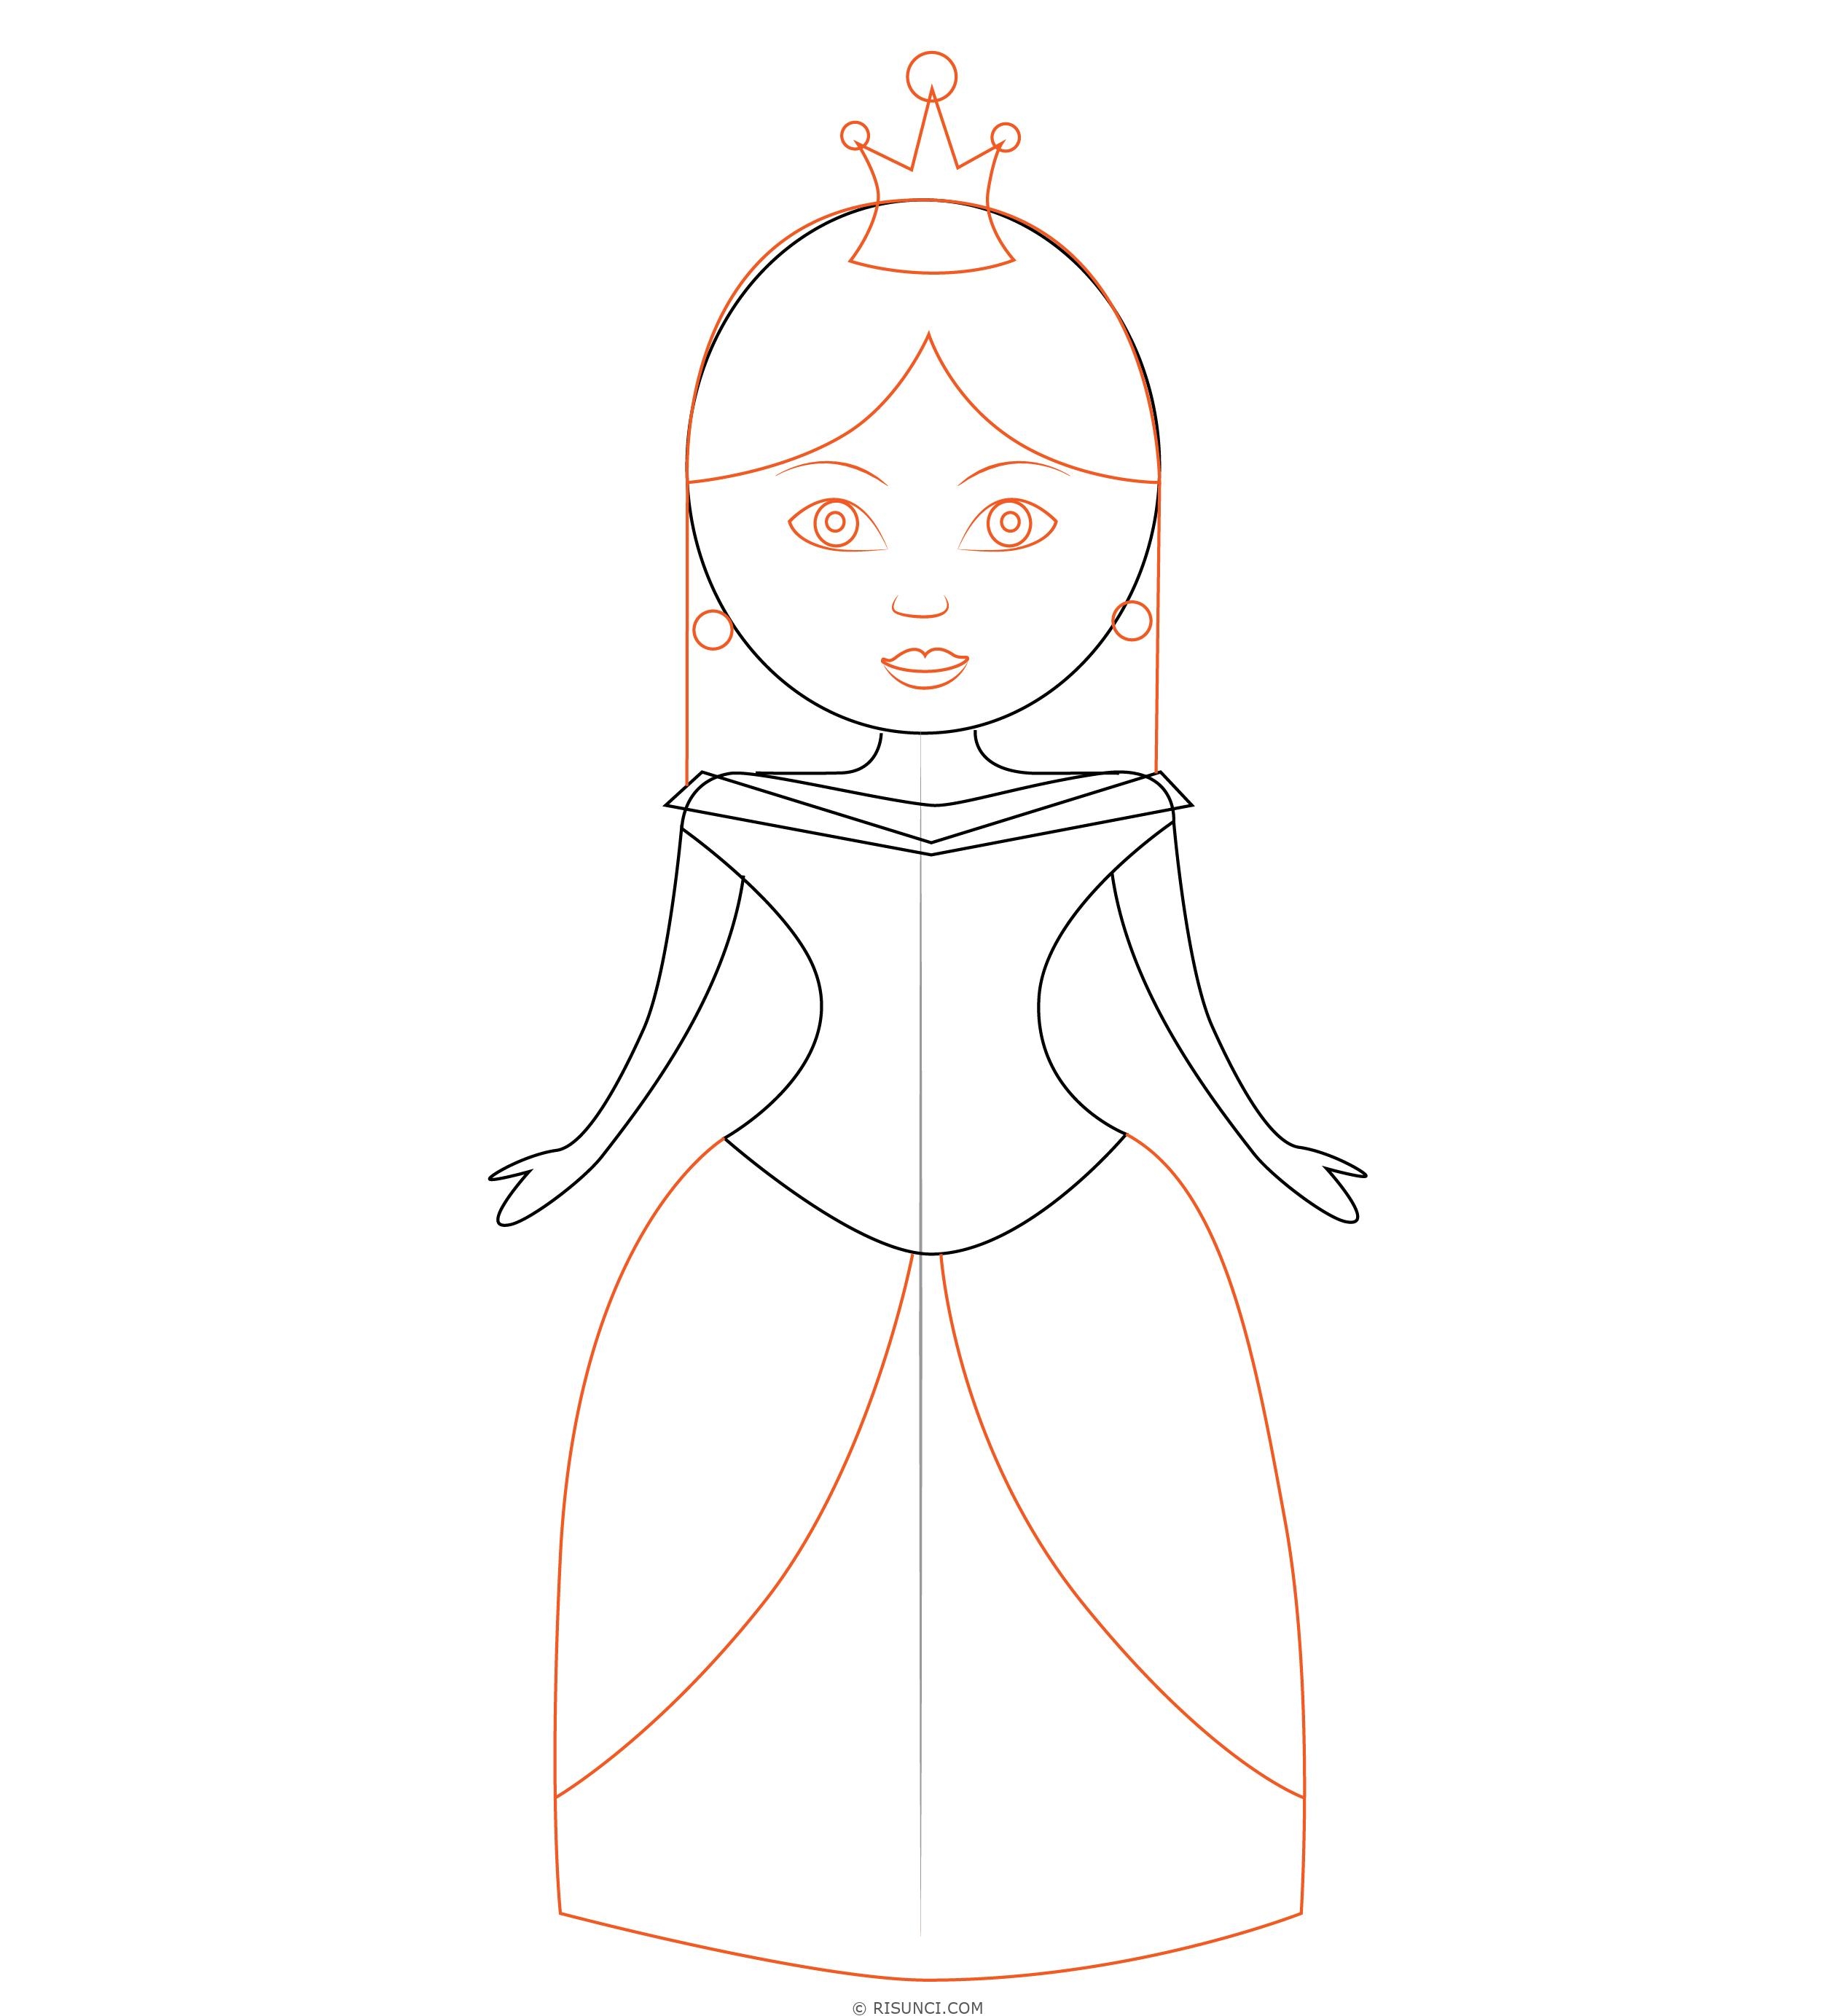 Идеи для срисовки к сказке снежная королева легкие (86 фото)